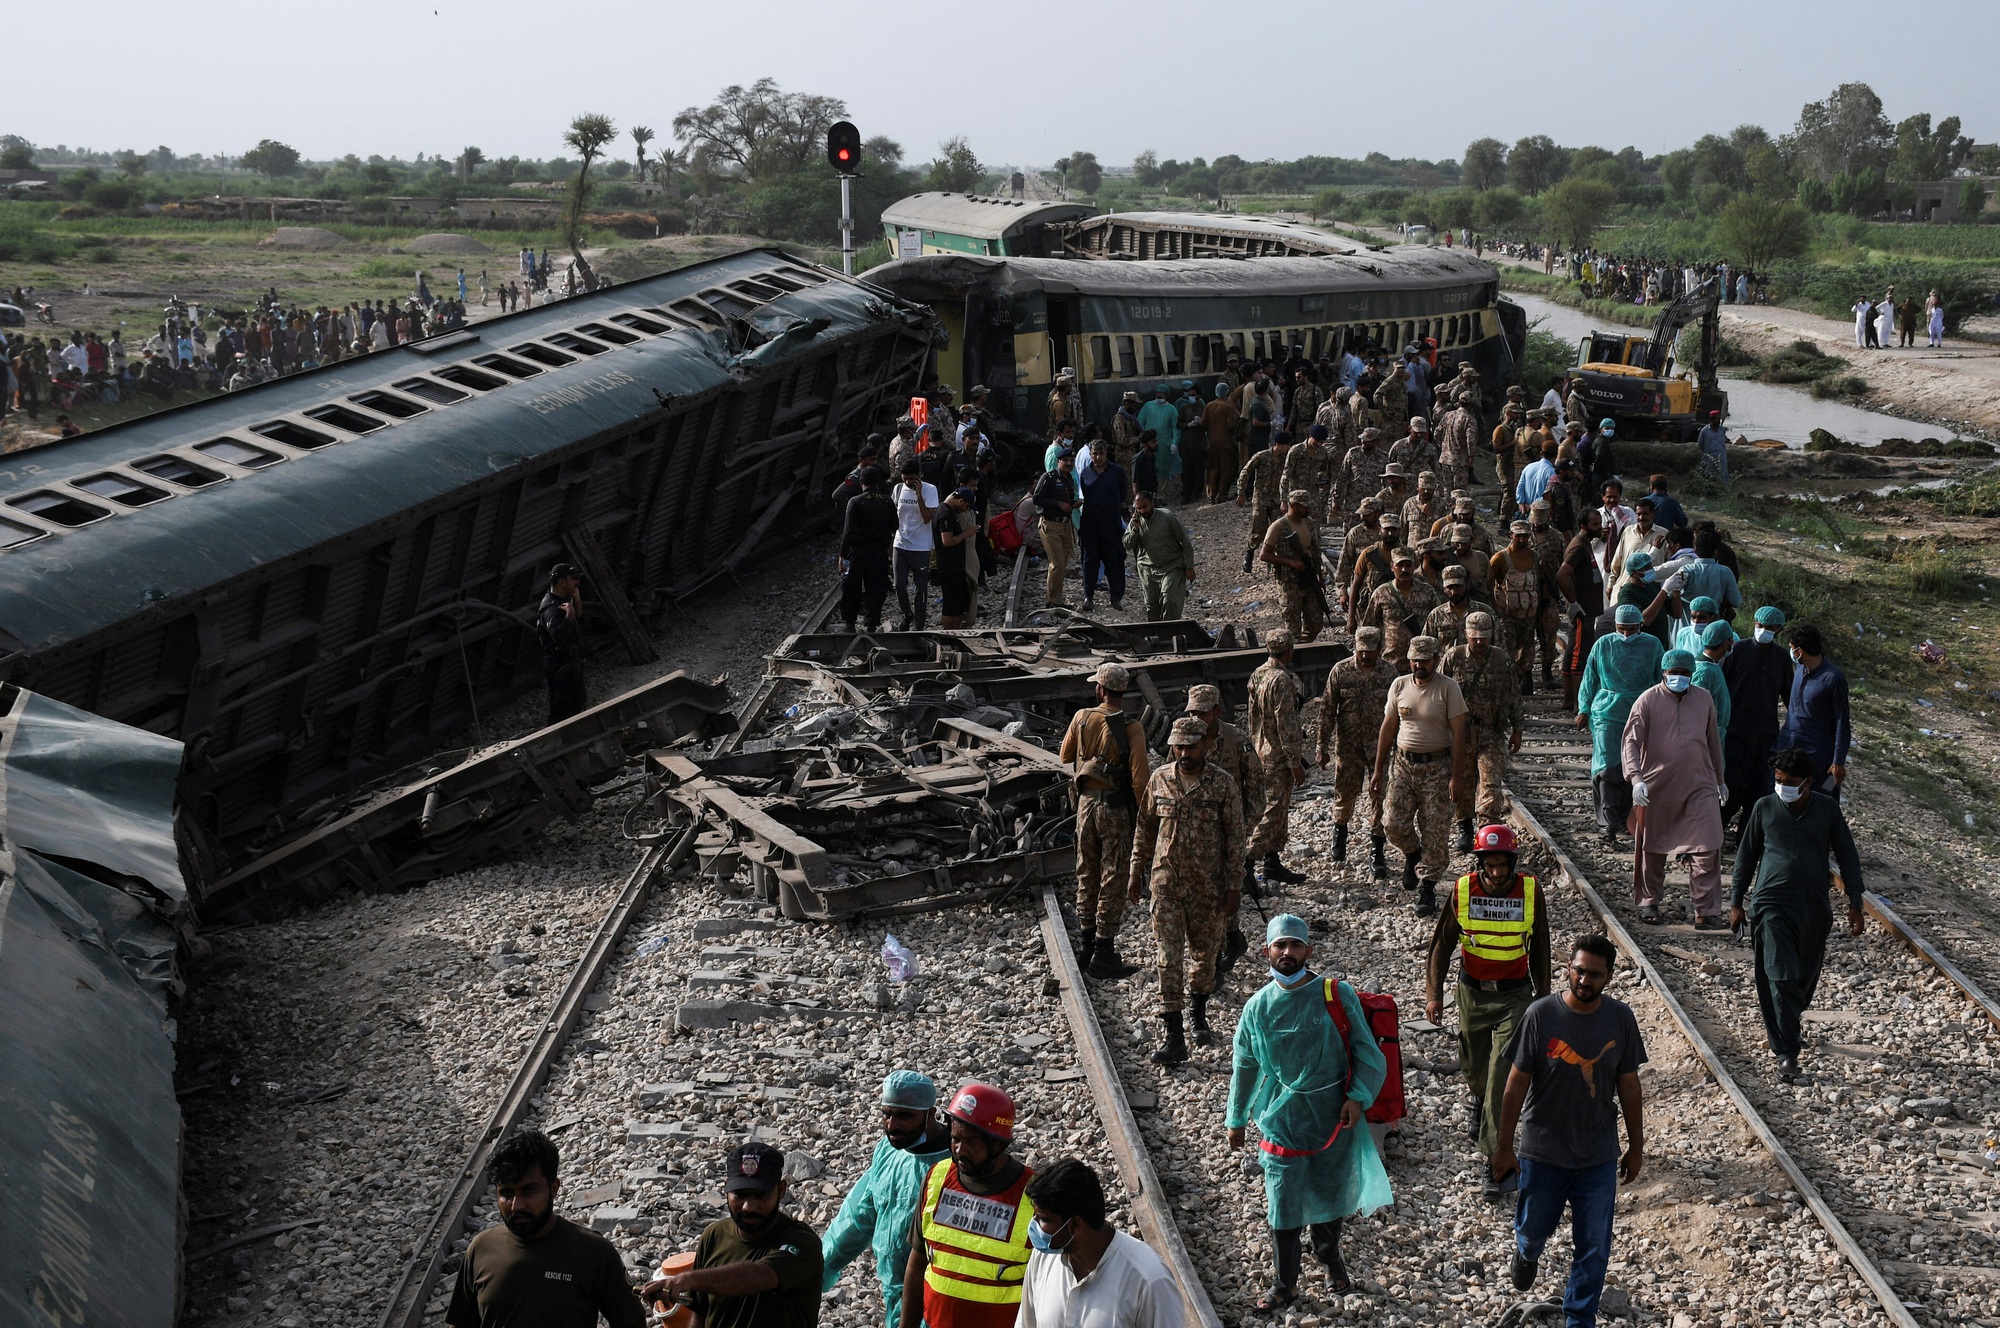 Ít nhất 30 người thiệt mạng trong vụ tai nạn tàu lửa ở Pakistan - Ảnh 1.